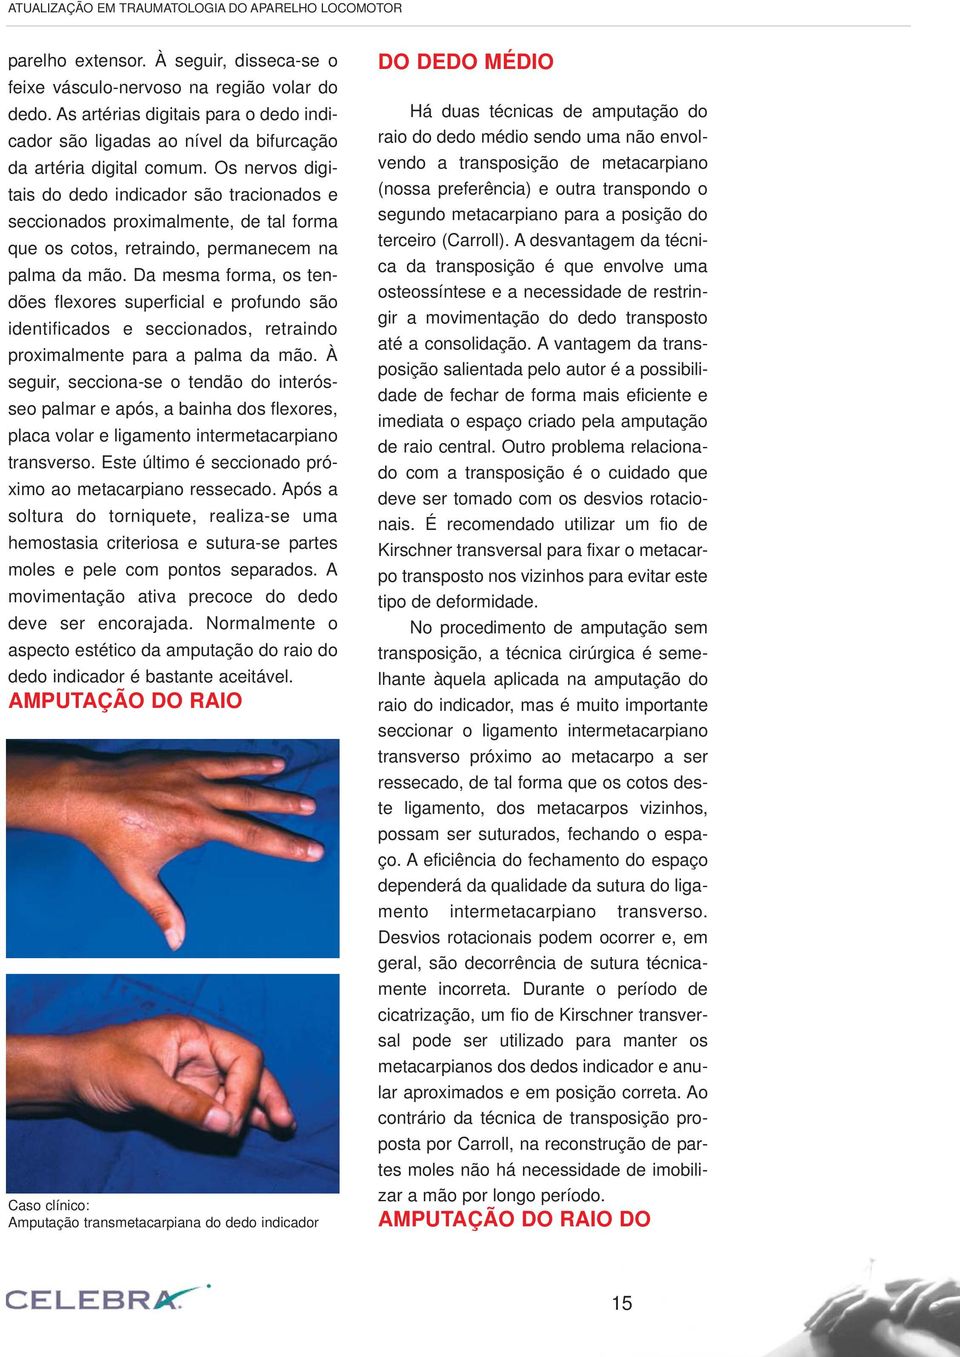 Os nervos digitais do dedo indicador são tracionados e seccionados proximalmente, de tal forma que os cotos, retraindo, permanecem na palma da mão.